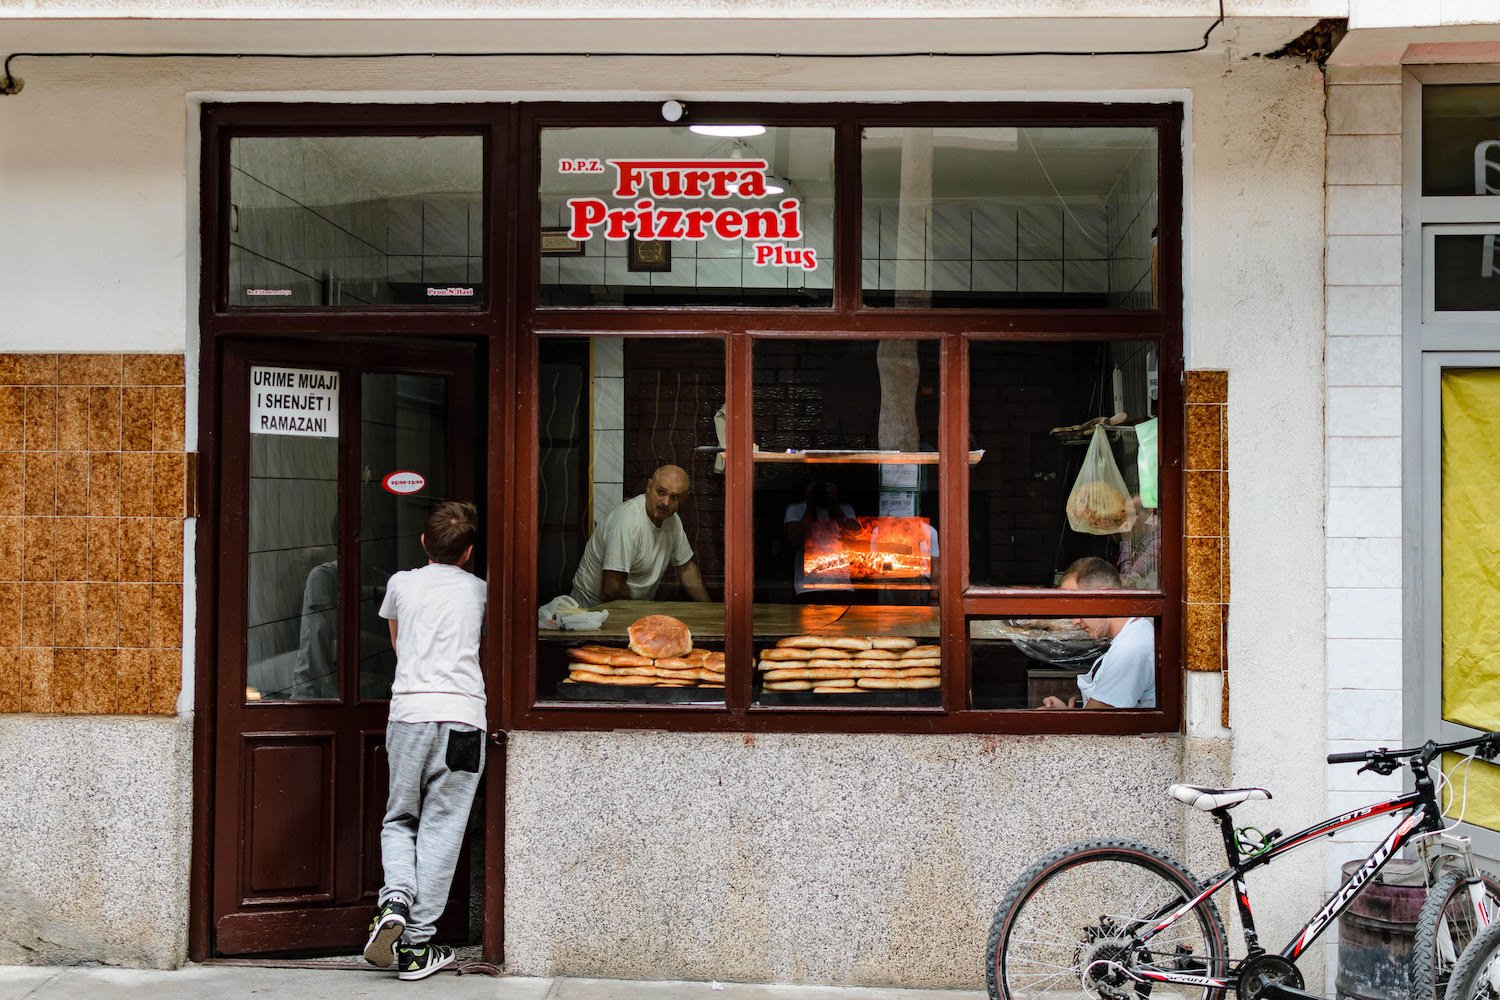 A bakery in Prizren